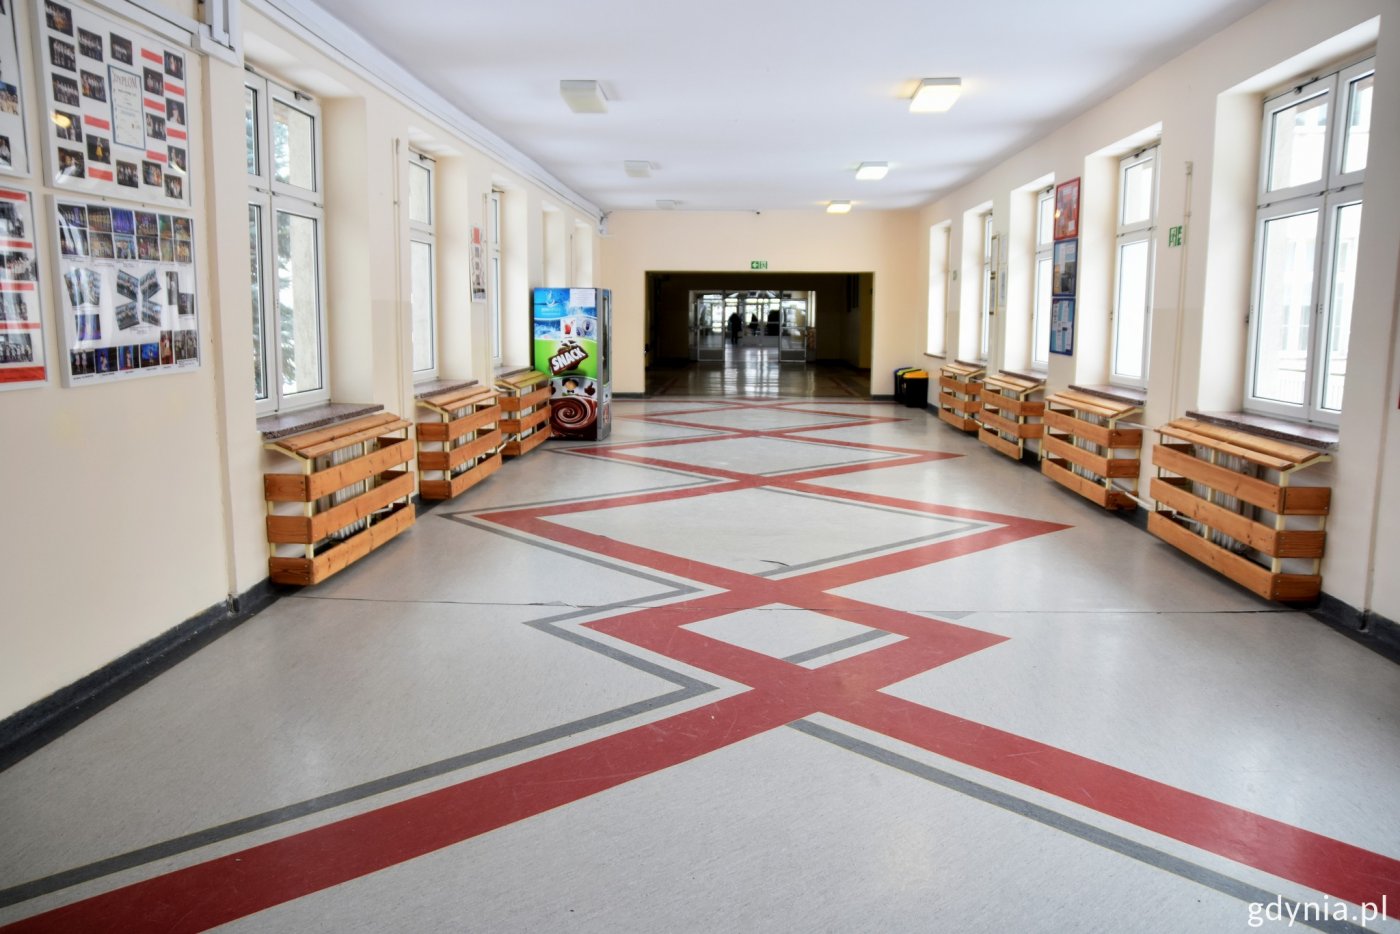 Widok na pusty korytarz szkolny w SP nr 47 w Gdyni. Fot. Paweł Kukla